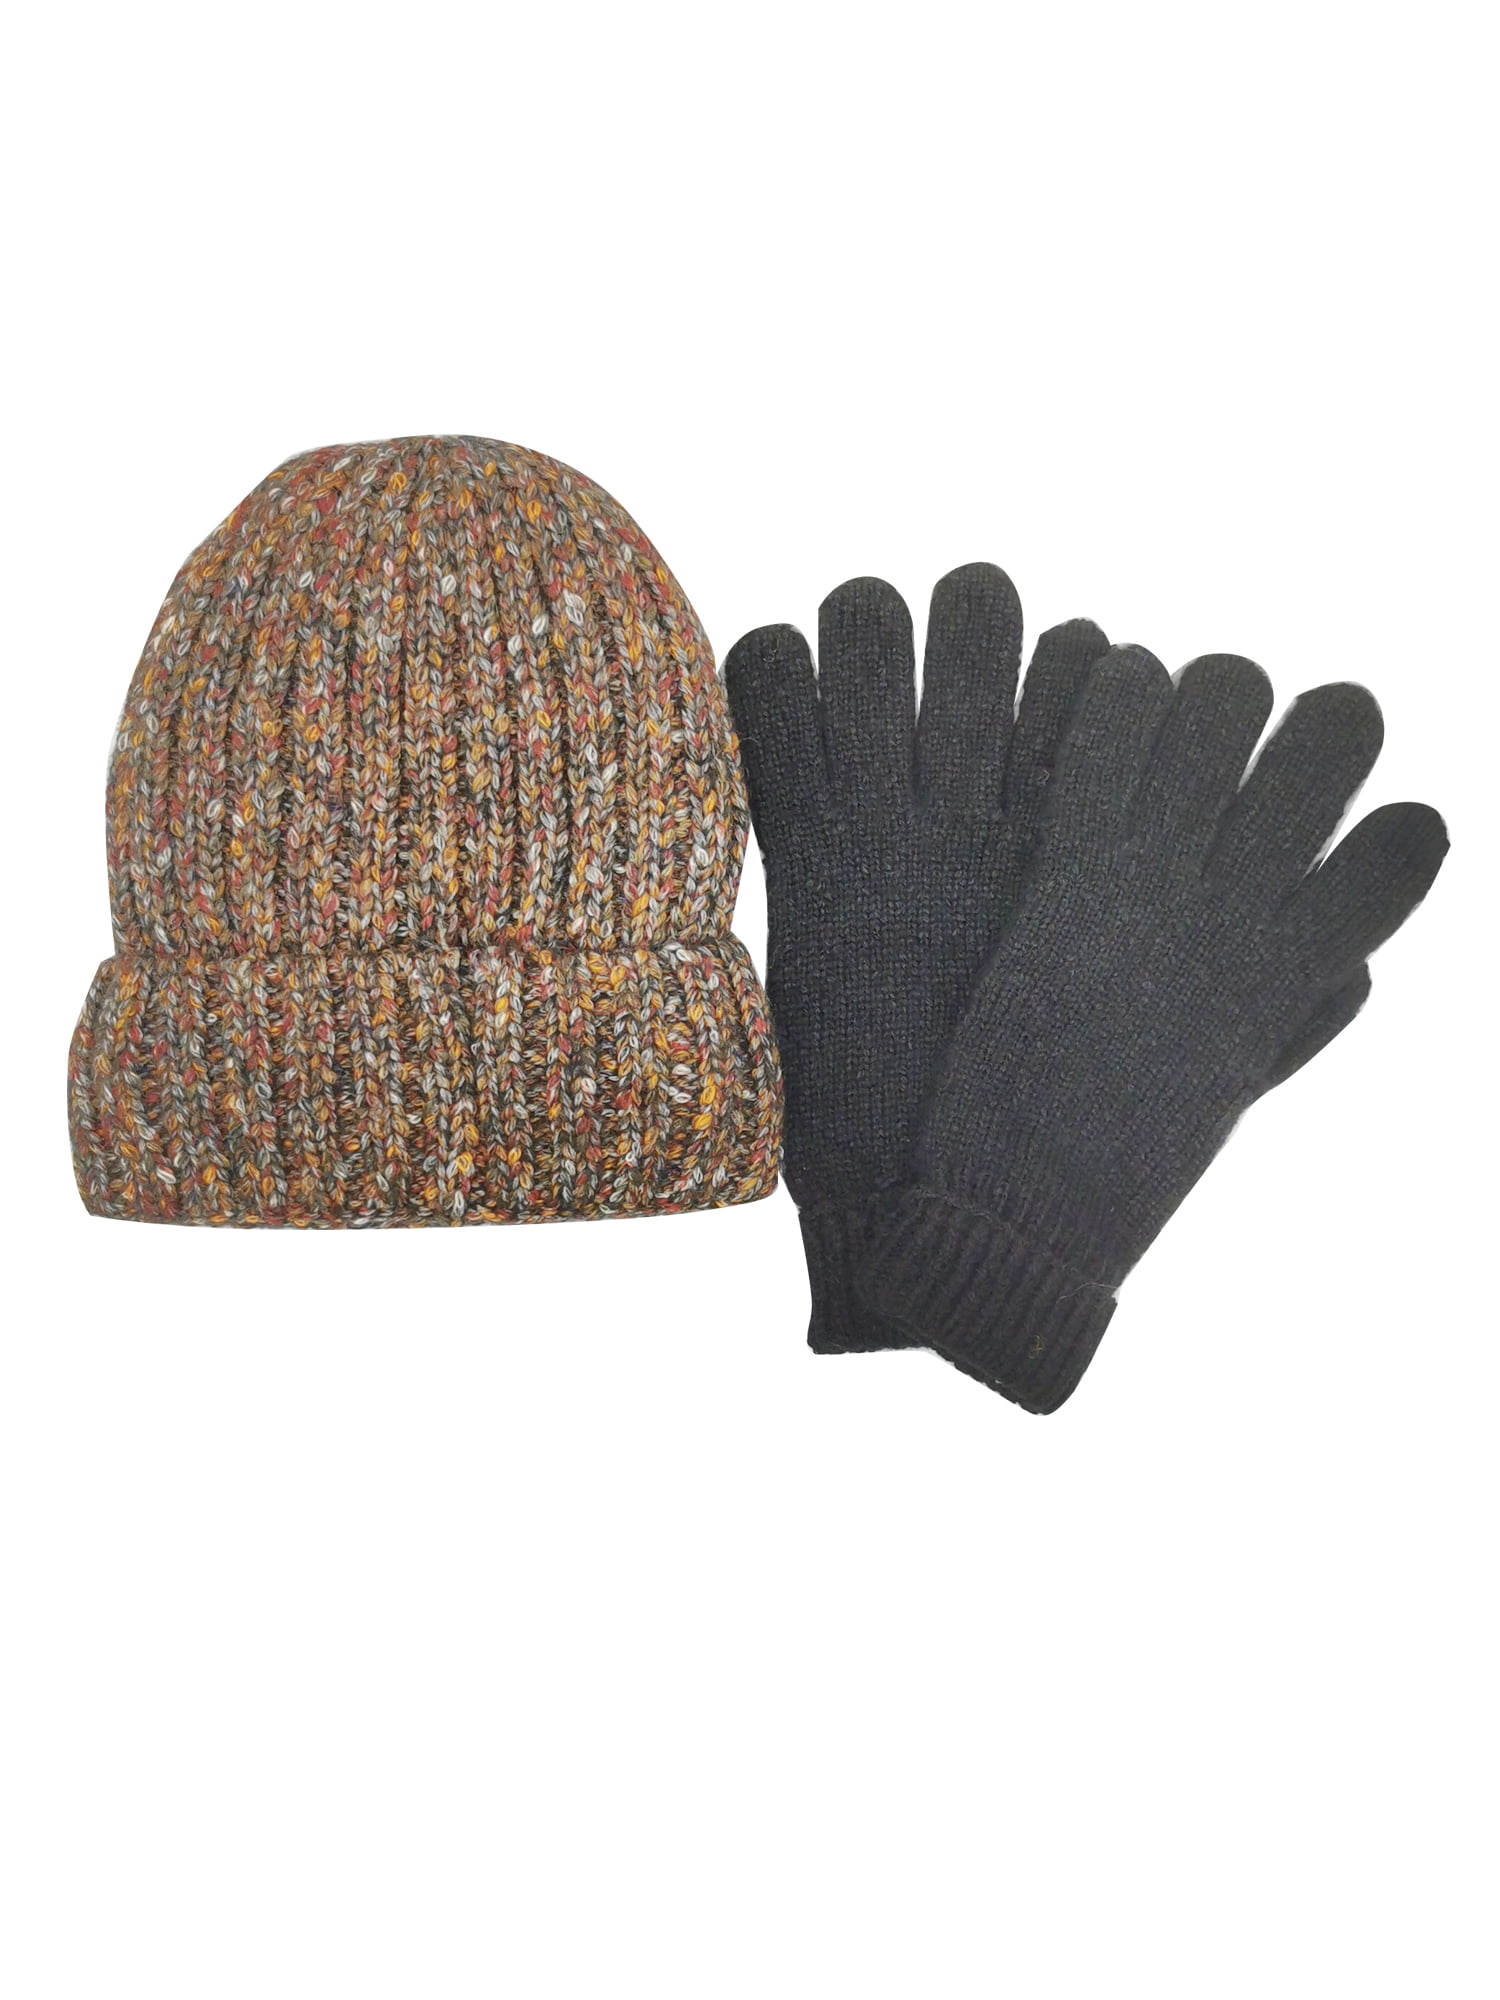 Snow Gloves Ski gloves Gloves Youth Adult Full face sock hat Beanie hat 2 pc set 